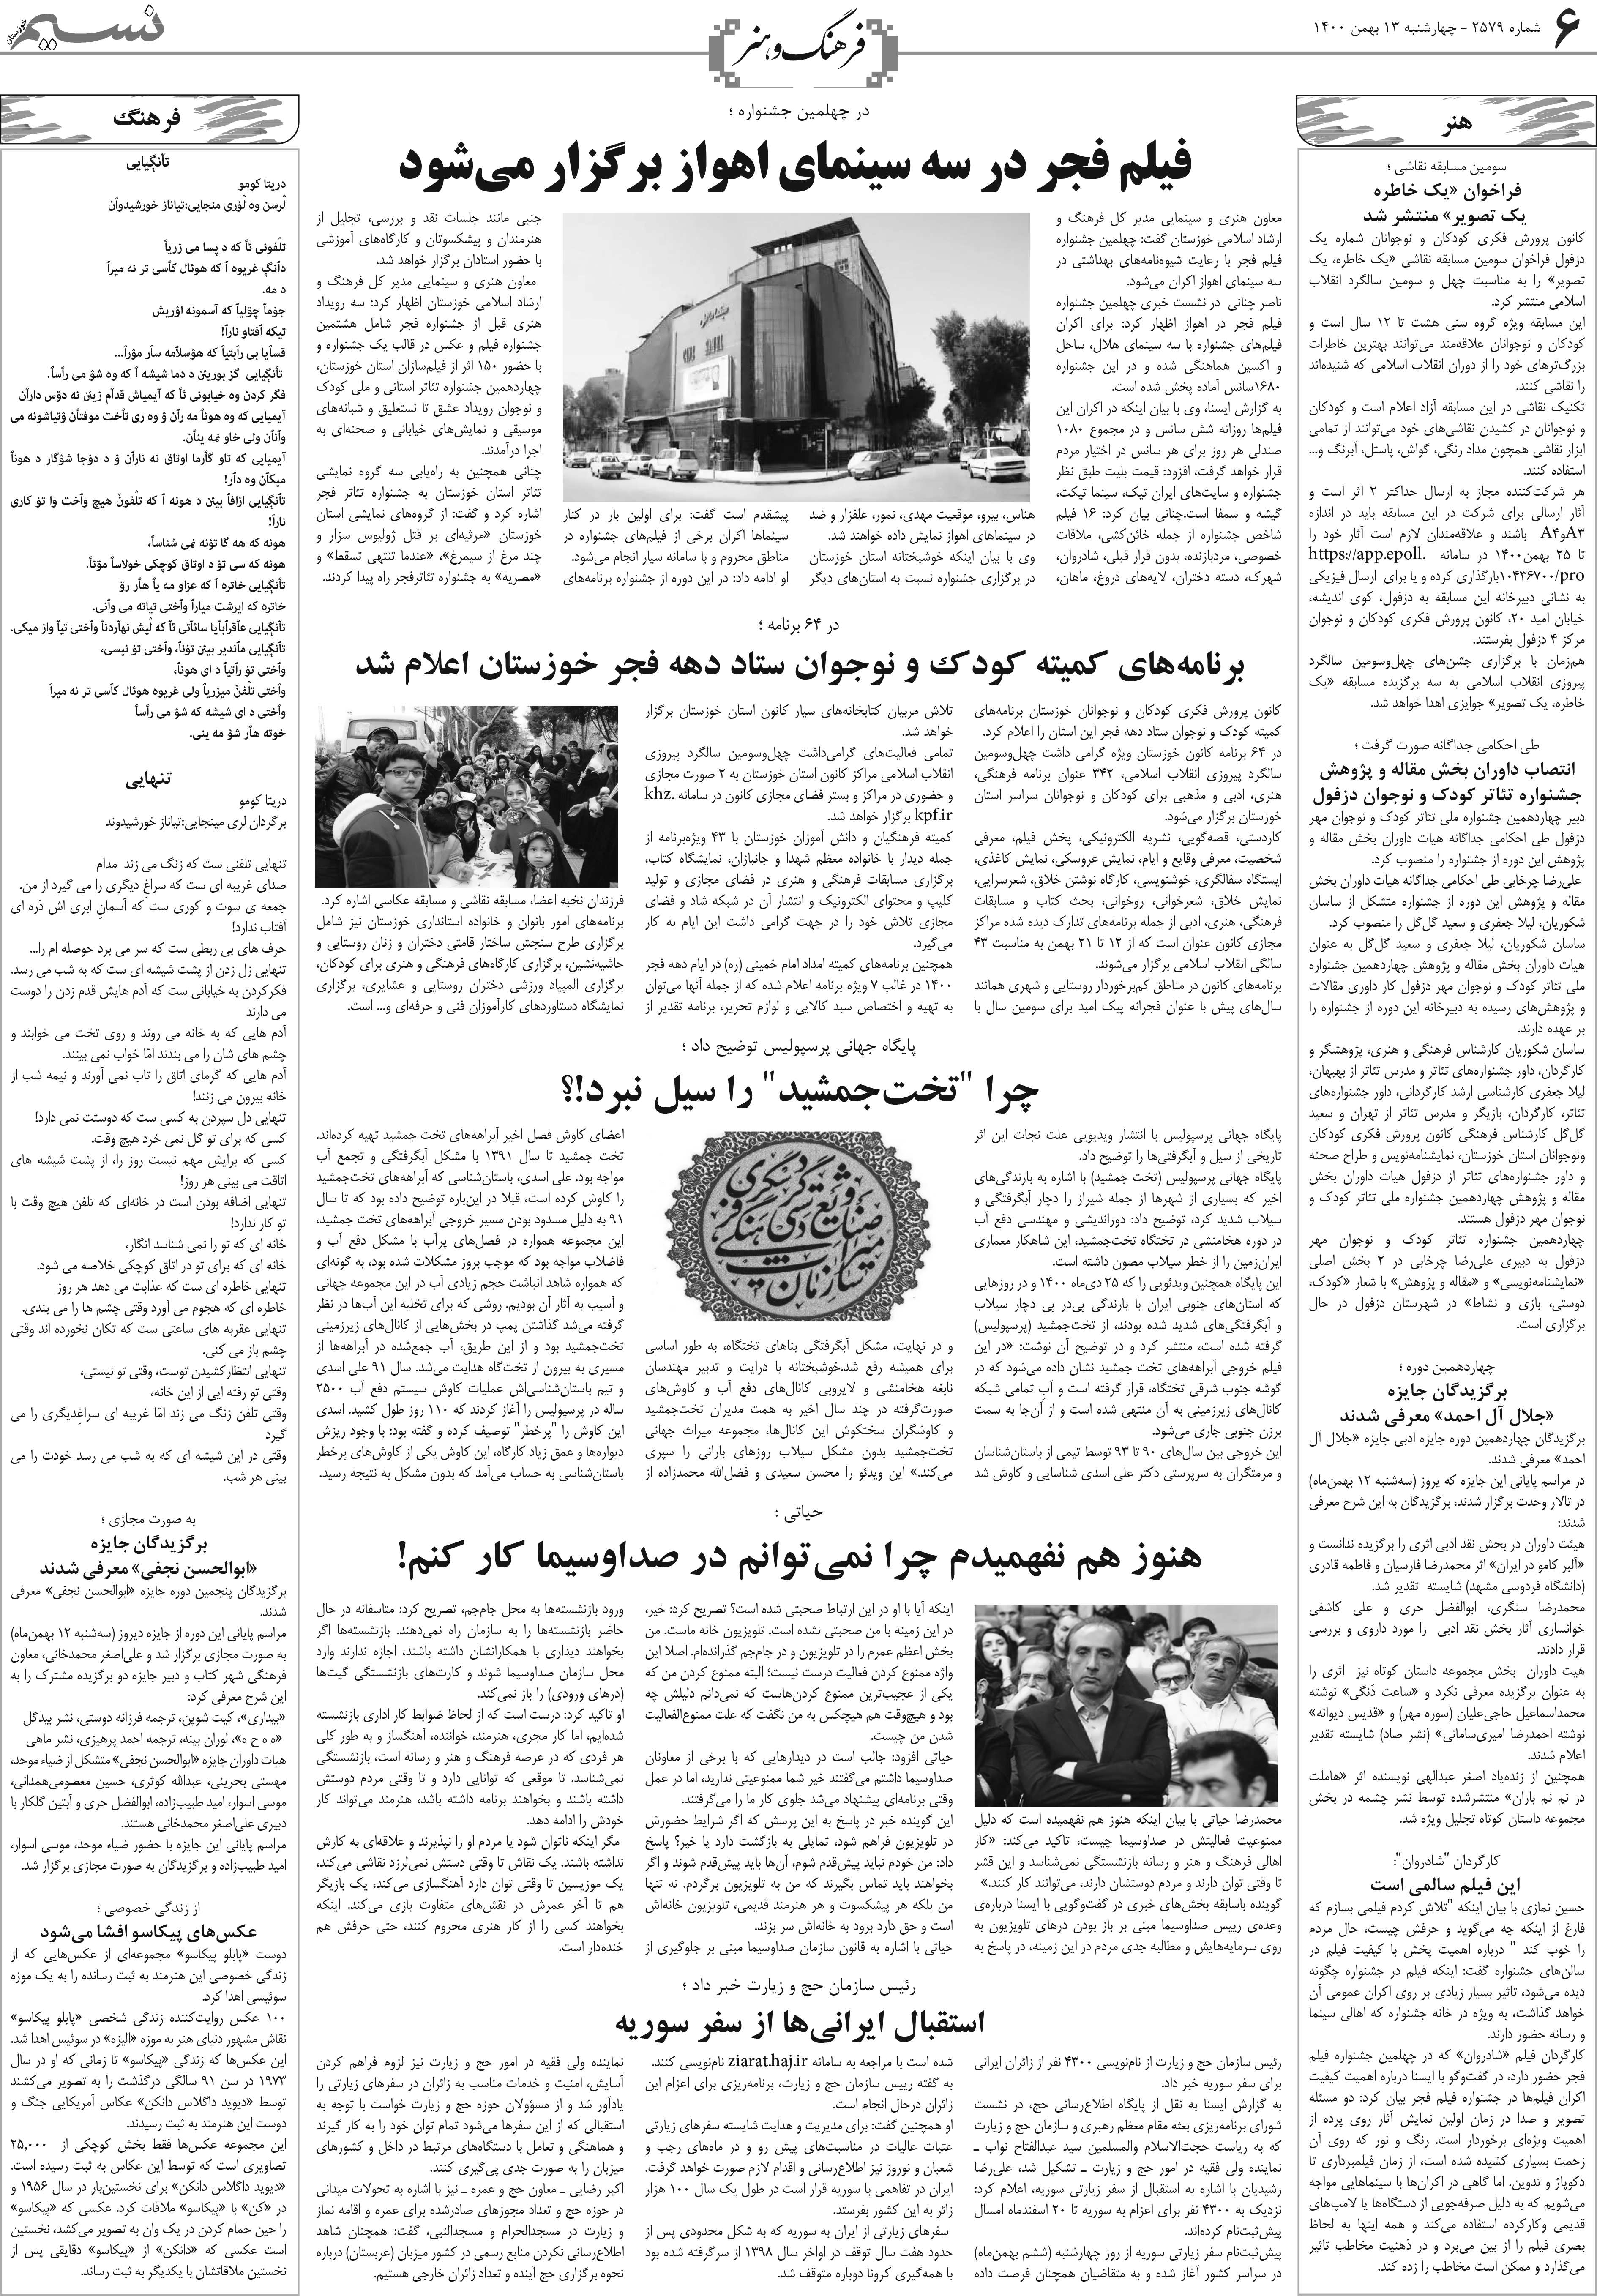 صفحه فرهنگ و هنر روزنامه نسیم شماره 2579